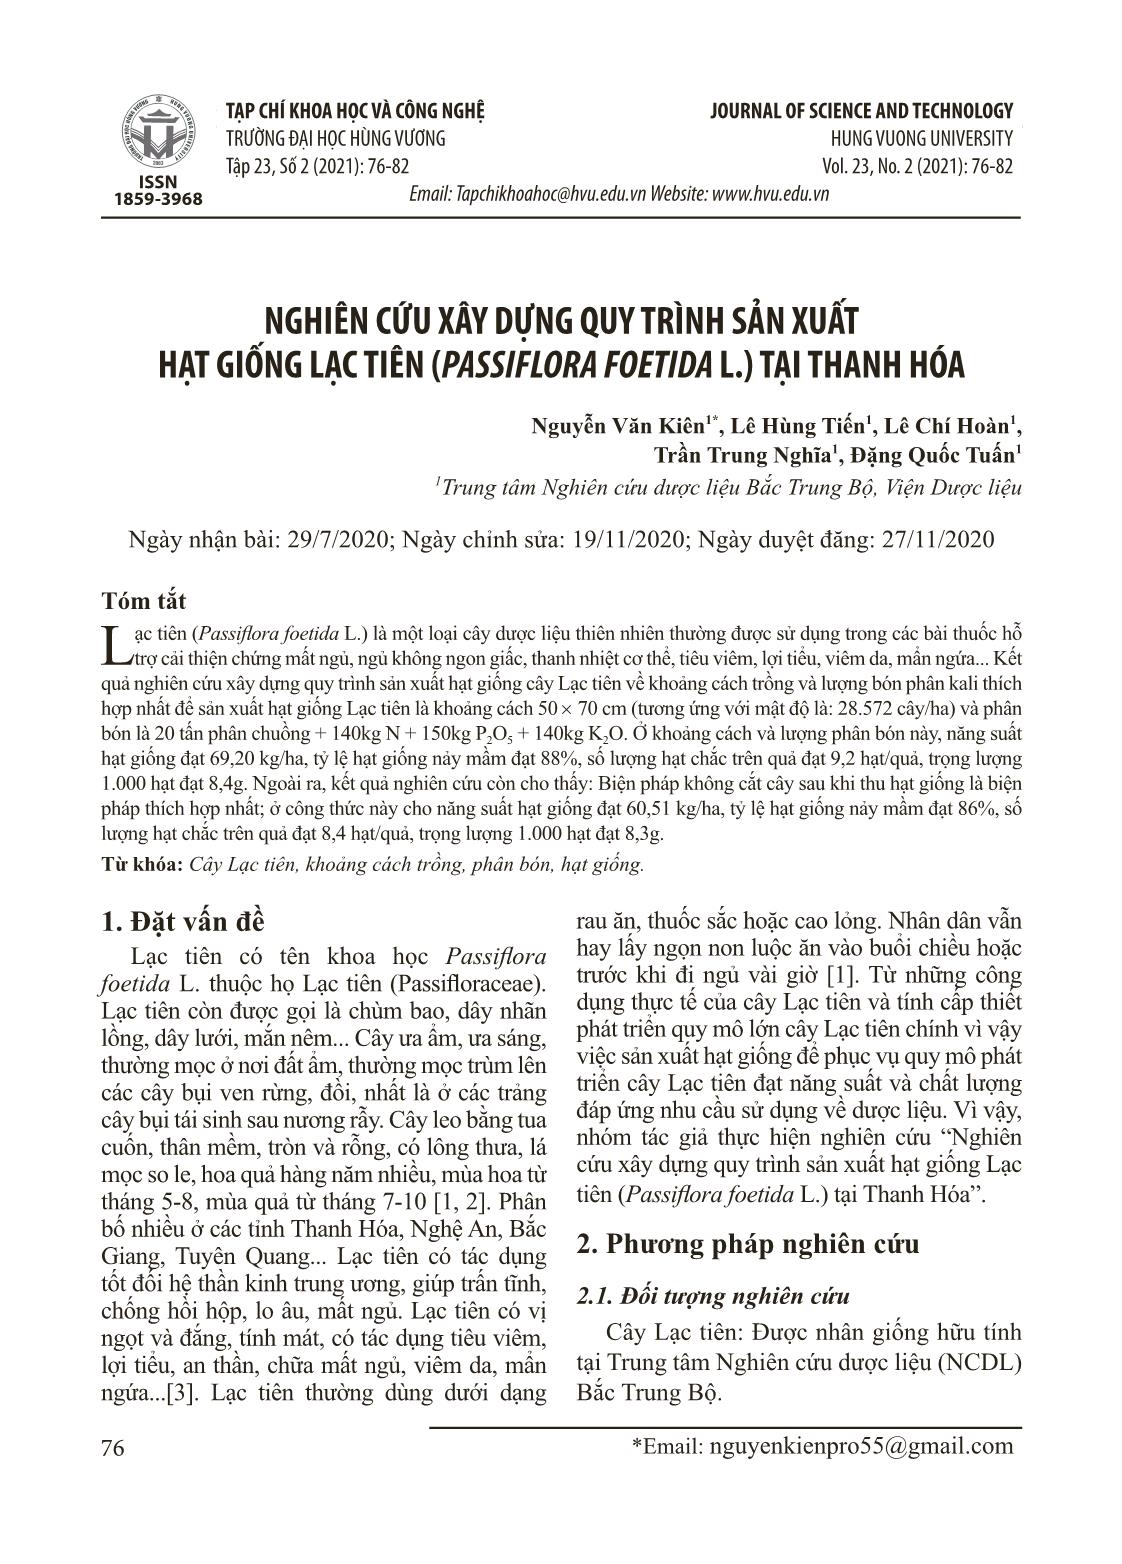 Nghiên cứu xây dựng quy trình sản xuất hạt giống lạc tiên (Passiflora foetida L.) tại Thanh Hóa trang 1